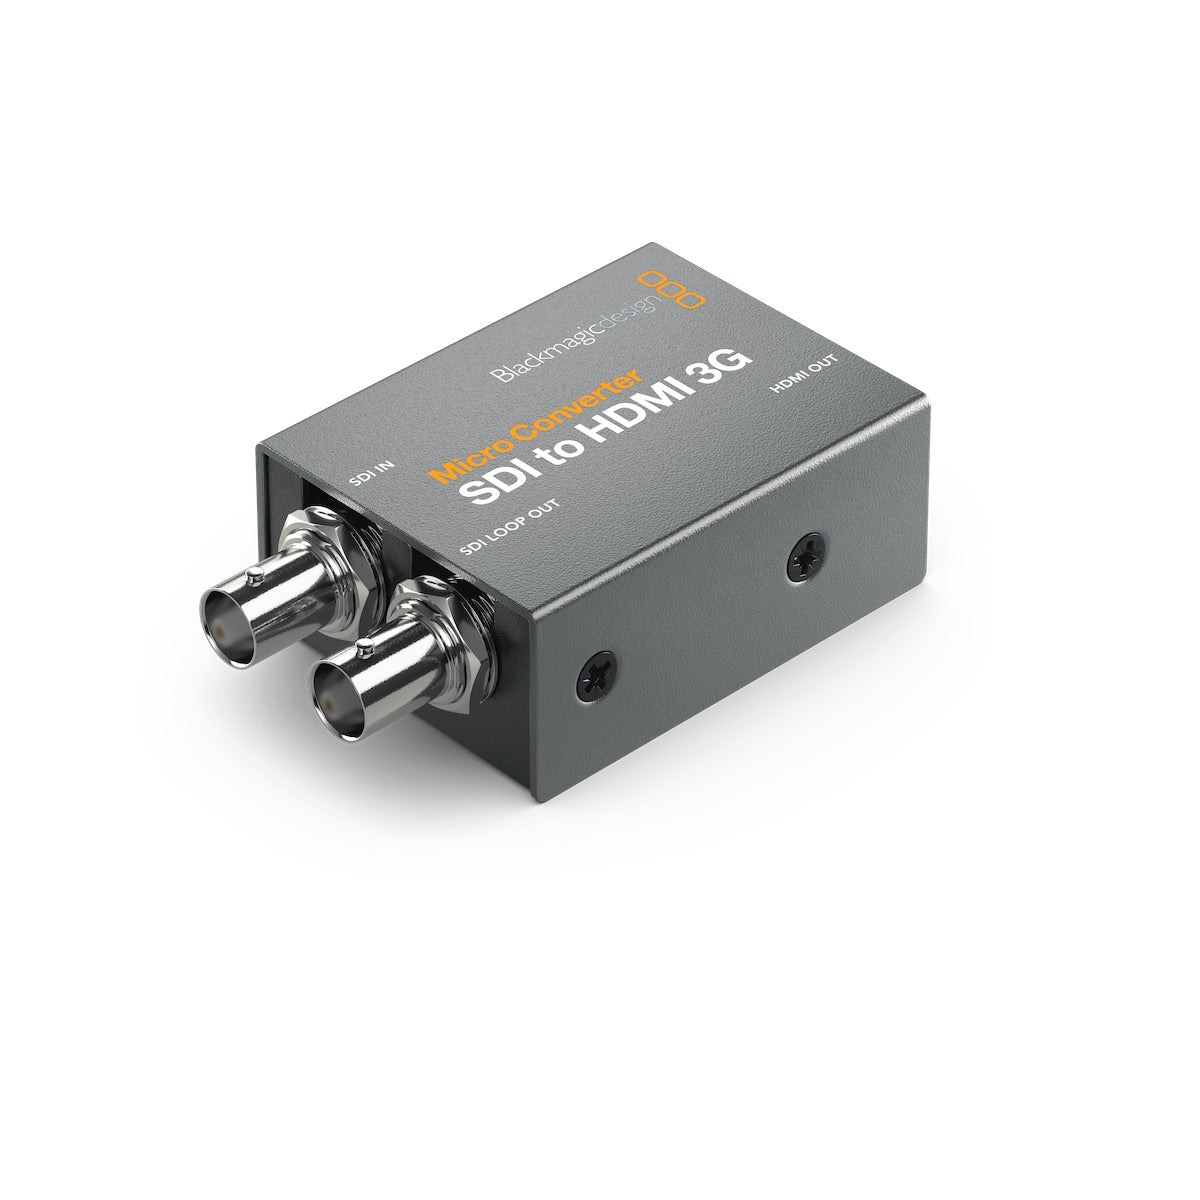 Blackmagic Design UltraStudio Recorder 3G - Thunderbolt 3 Adapter